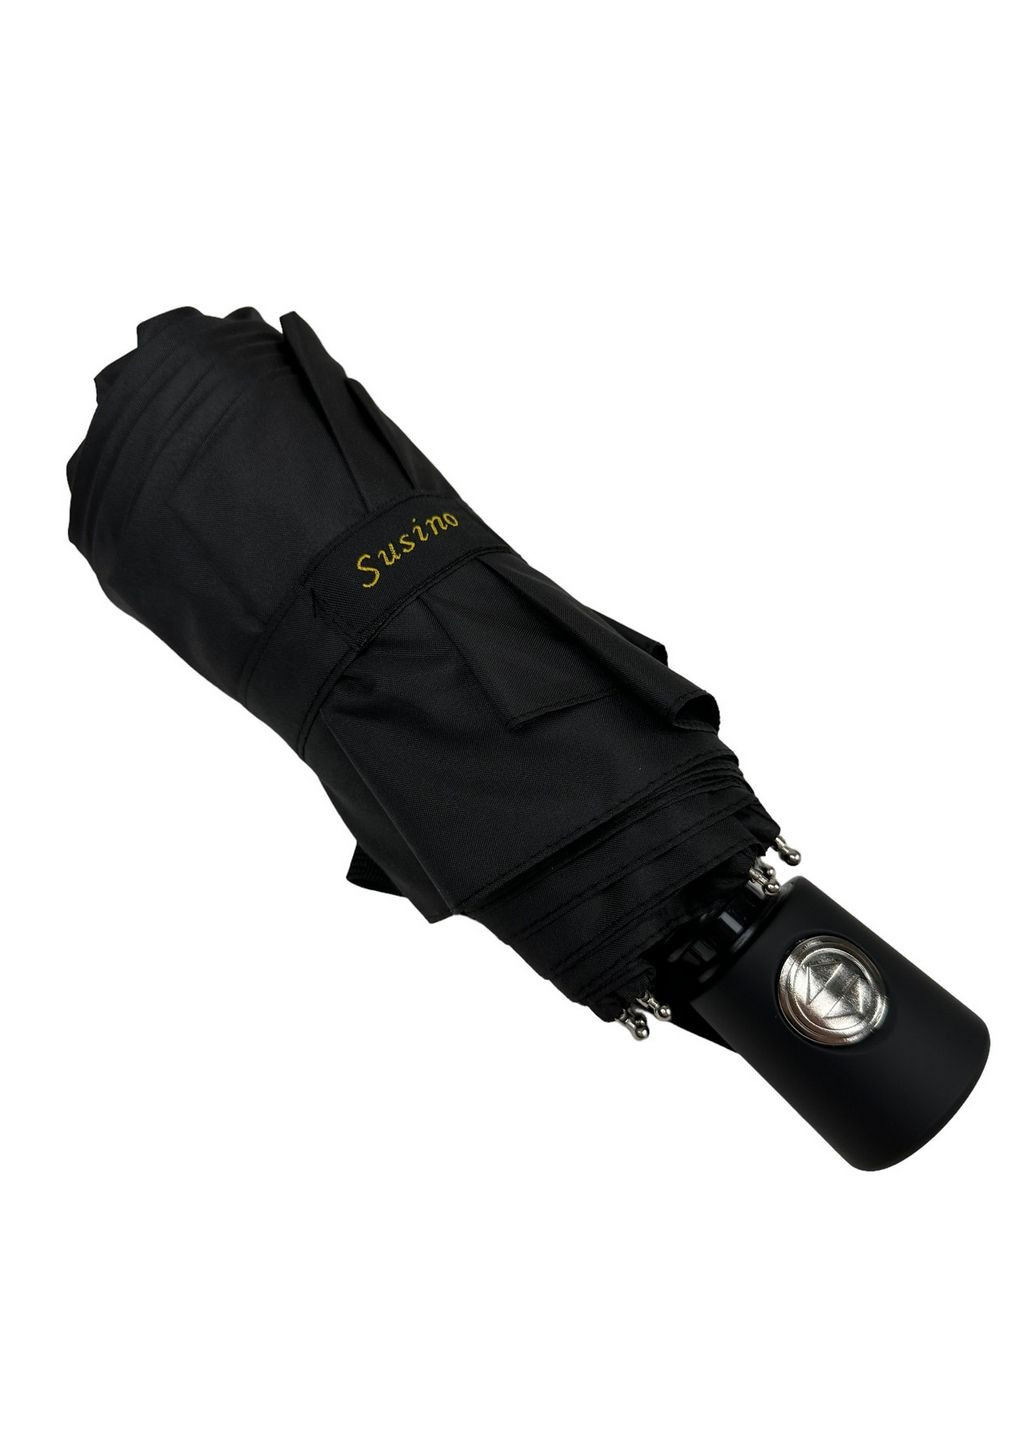 Складной мужской зонт автоматический Susino (288135000)